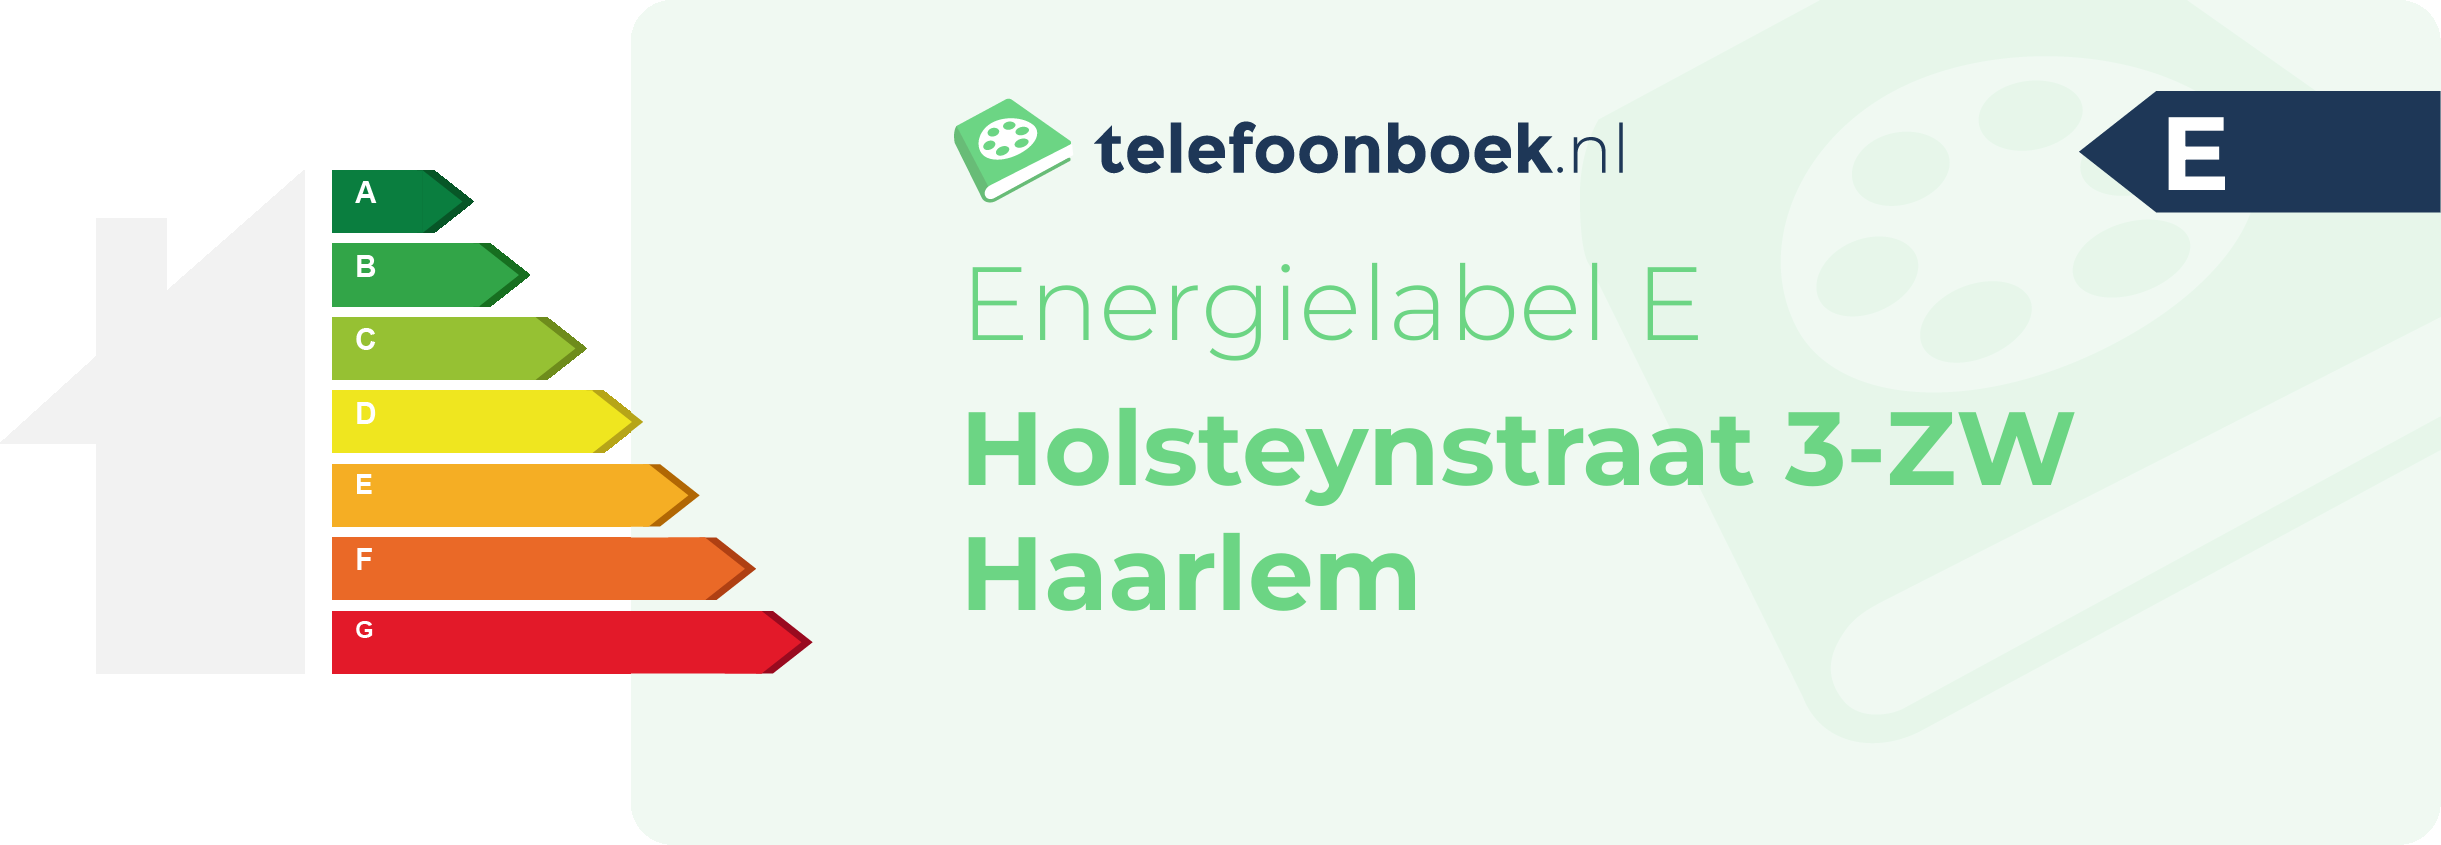 Energielabel Holsteynstraat 3-ZW Haarlem